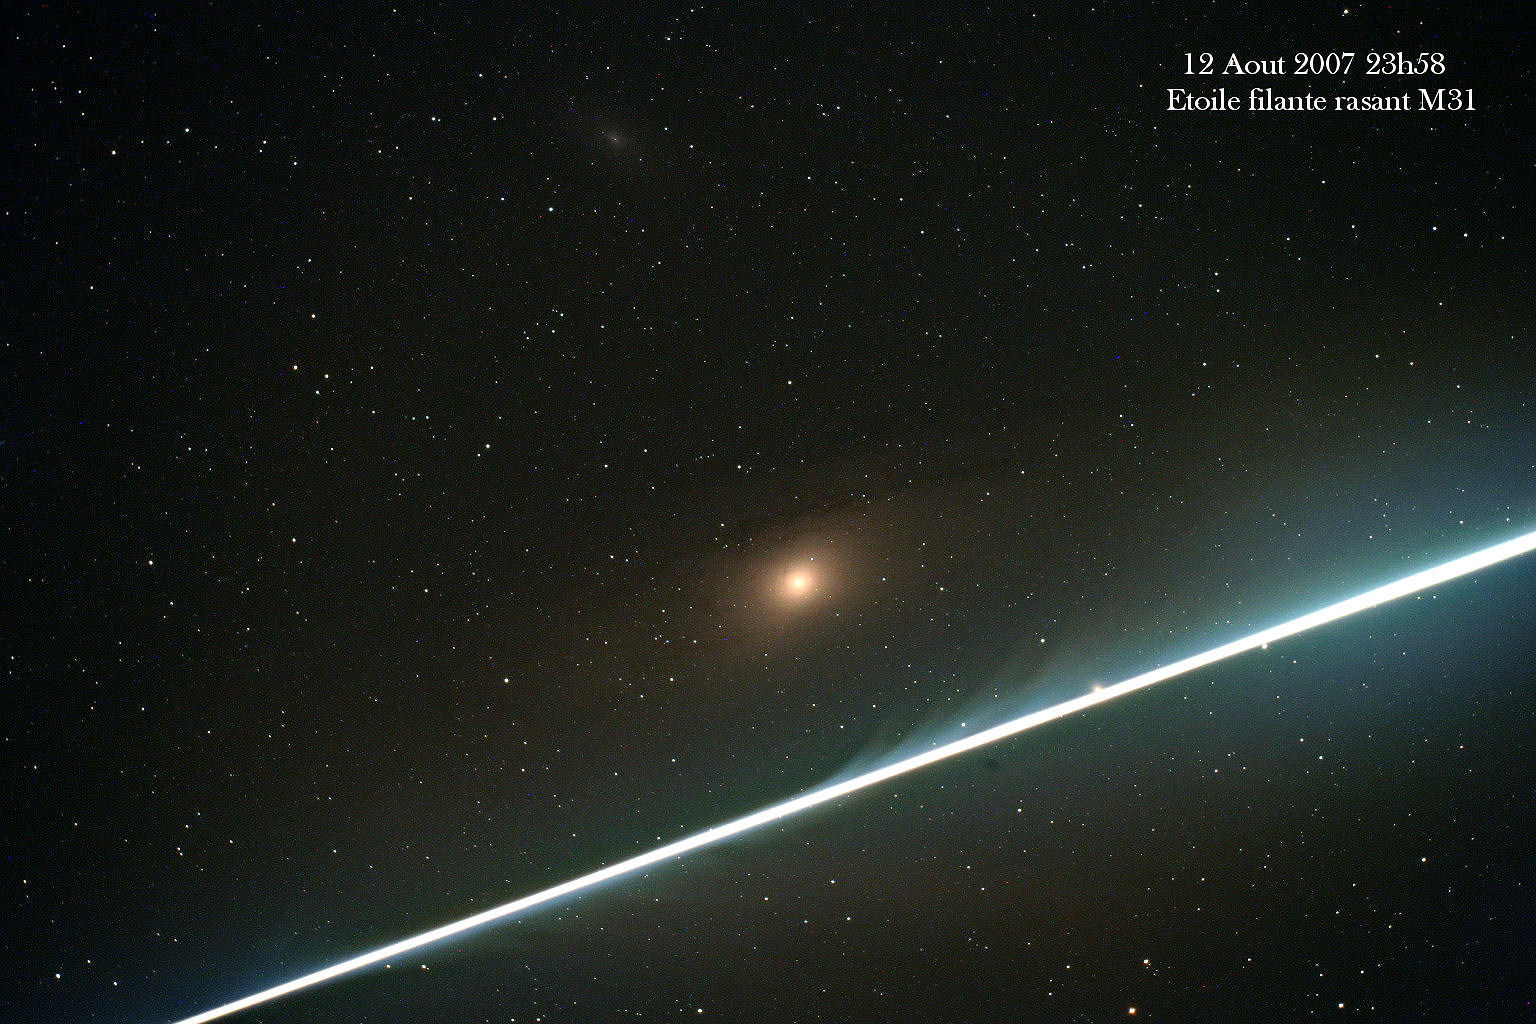 Le 12 août 2007 à 23 h 58, une étoile filante rase la galaxie M31, alias Andromède. © DR